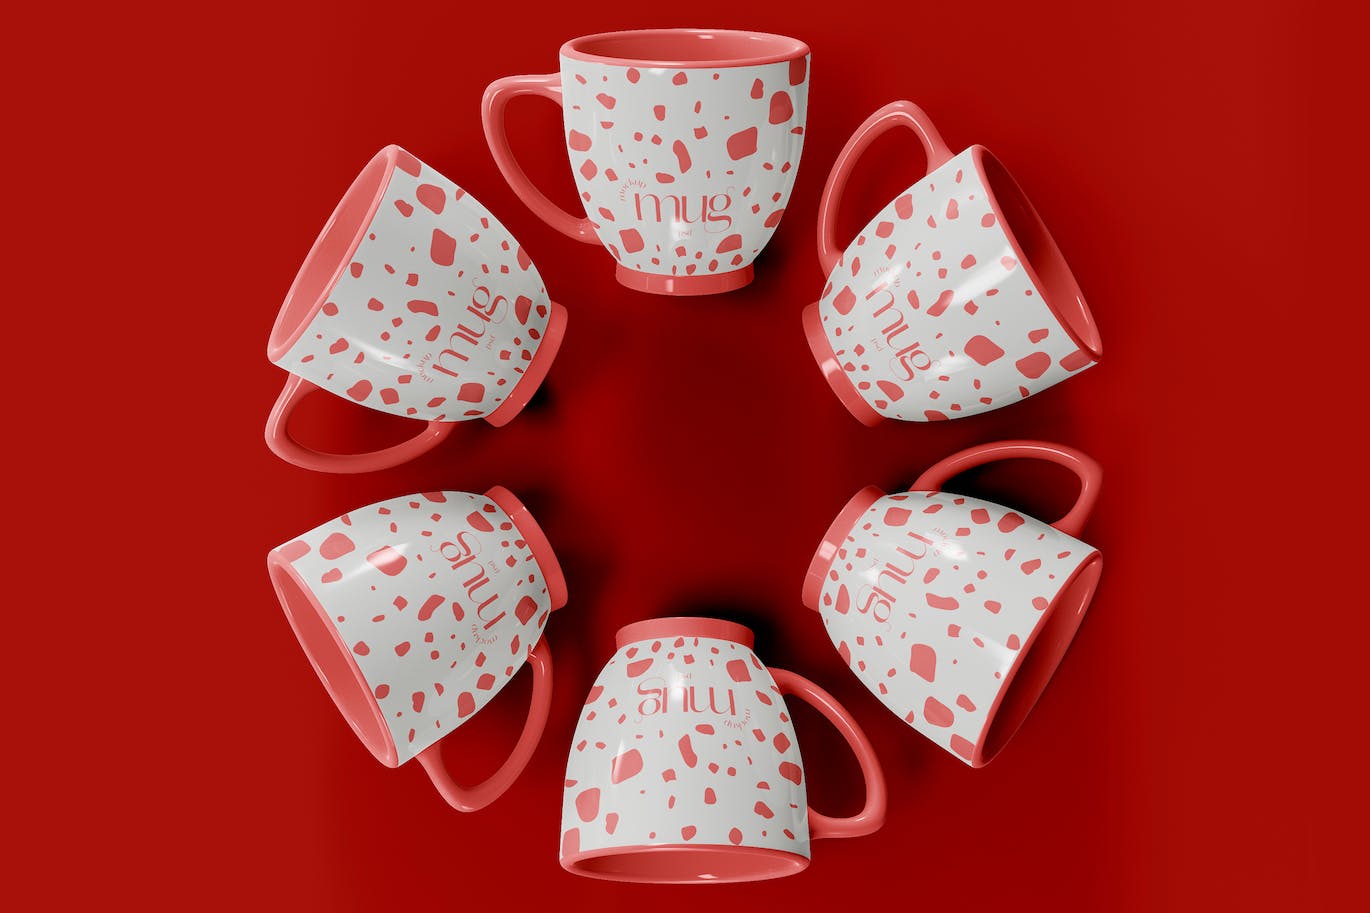 陶瓷咖啡马克杯杯身设计样机模板v5 Ceramic Mugs Mockup 样机素材 第1张